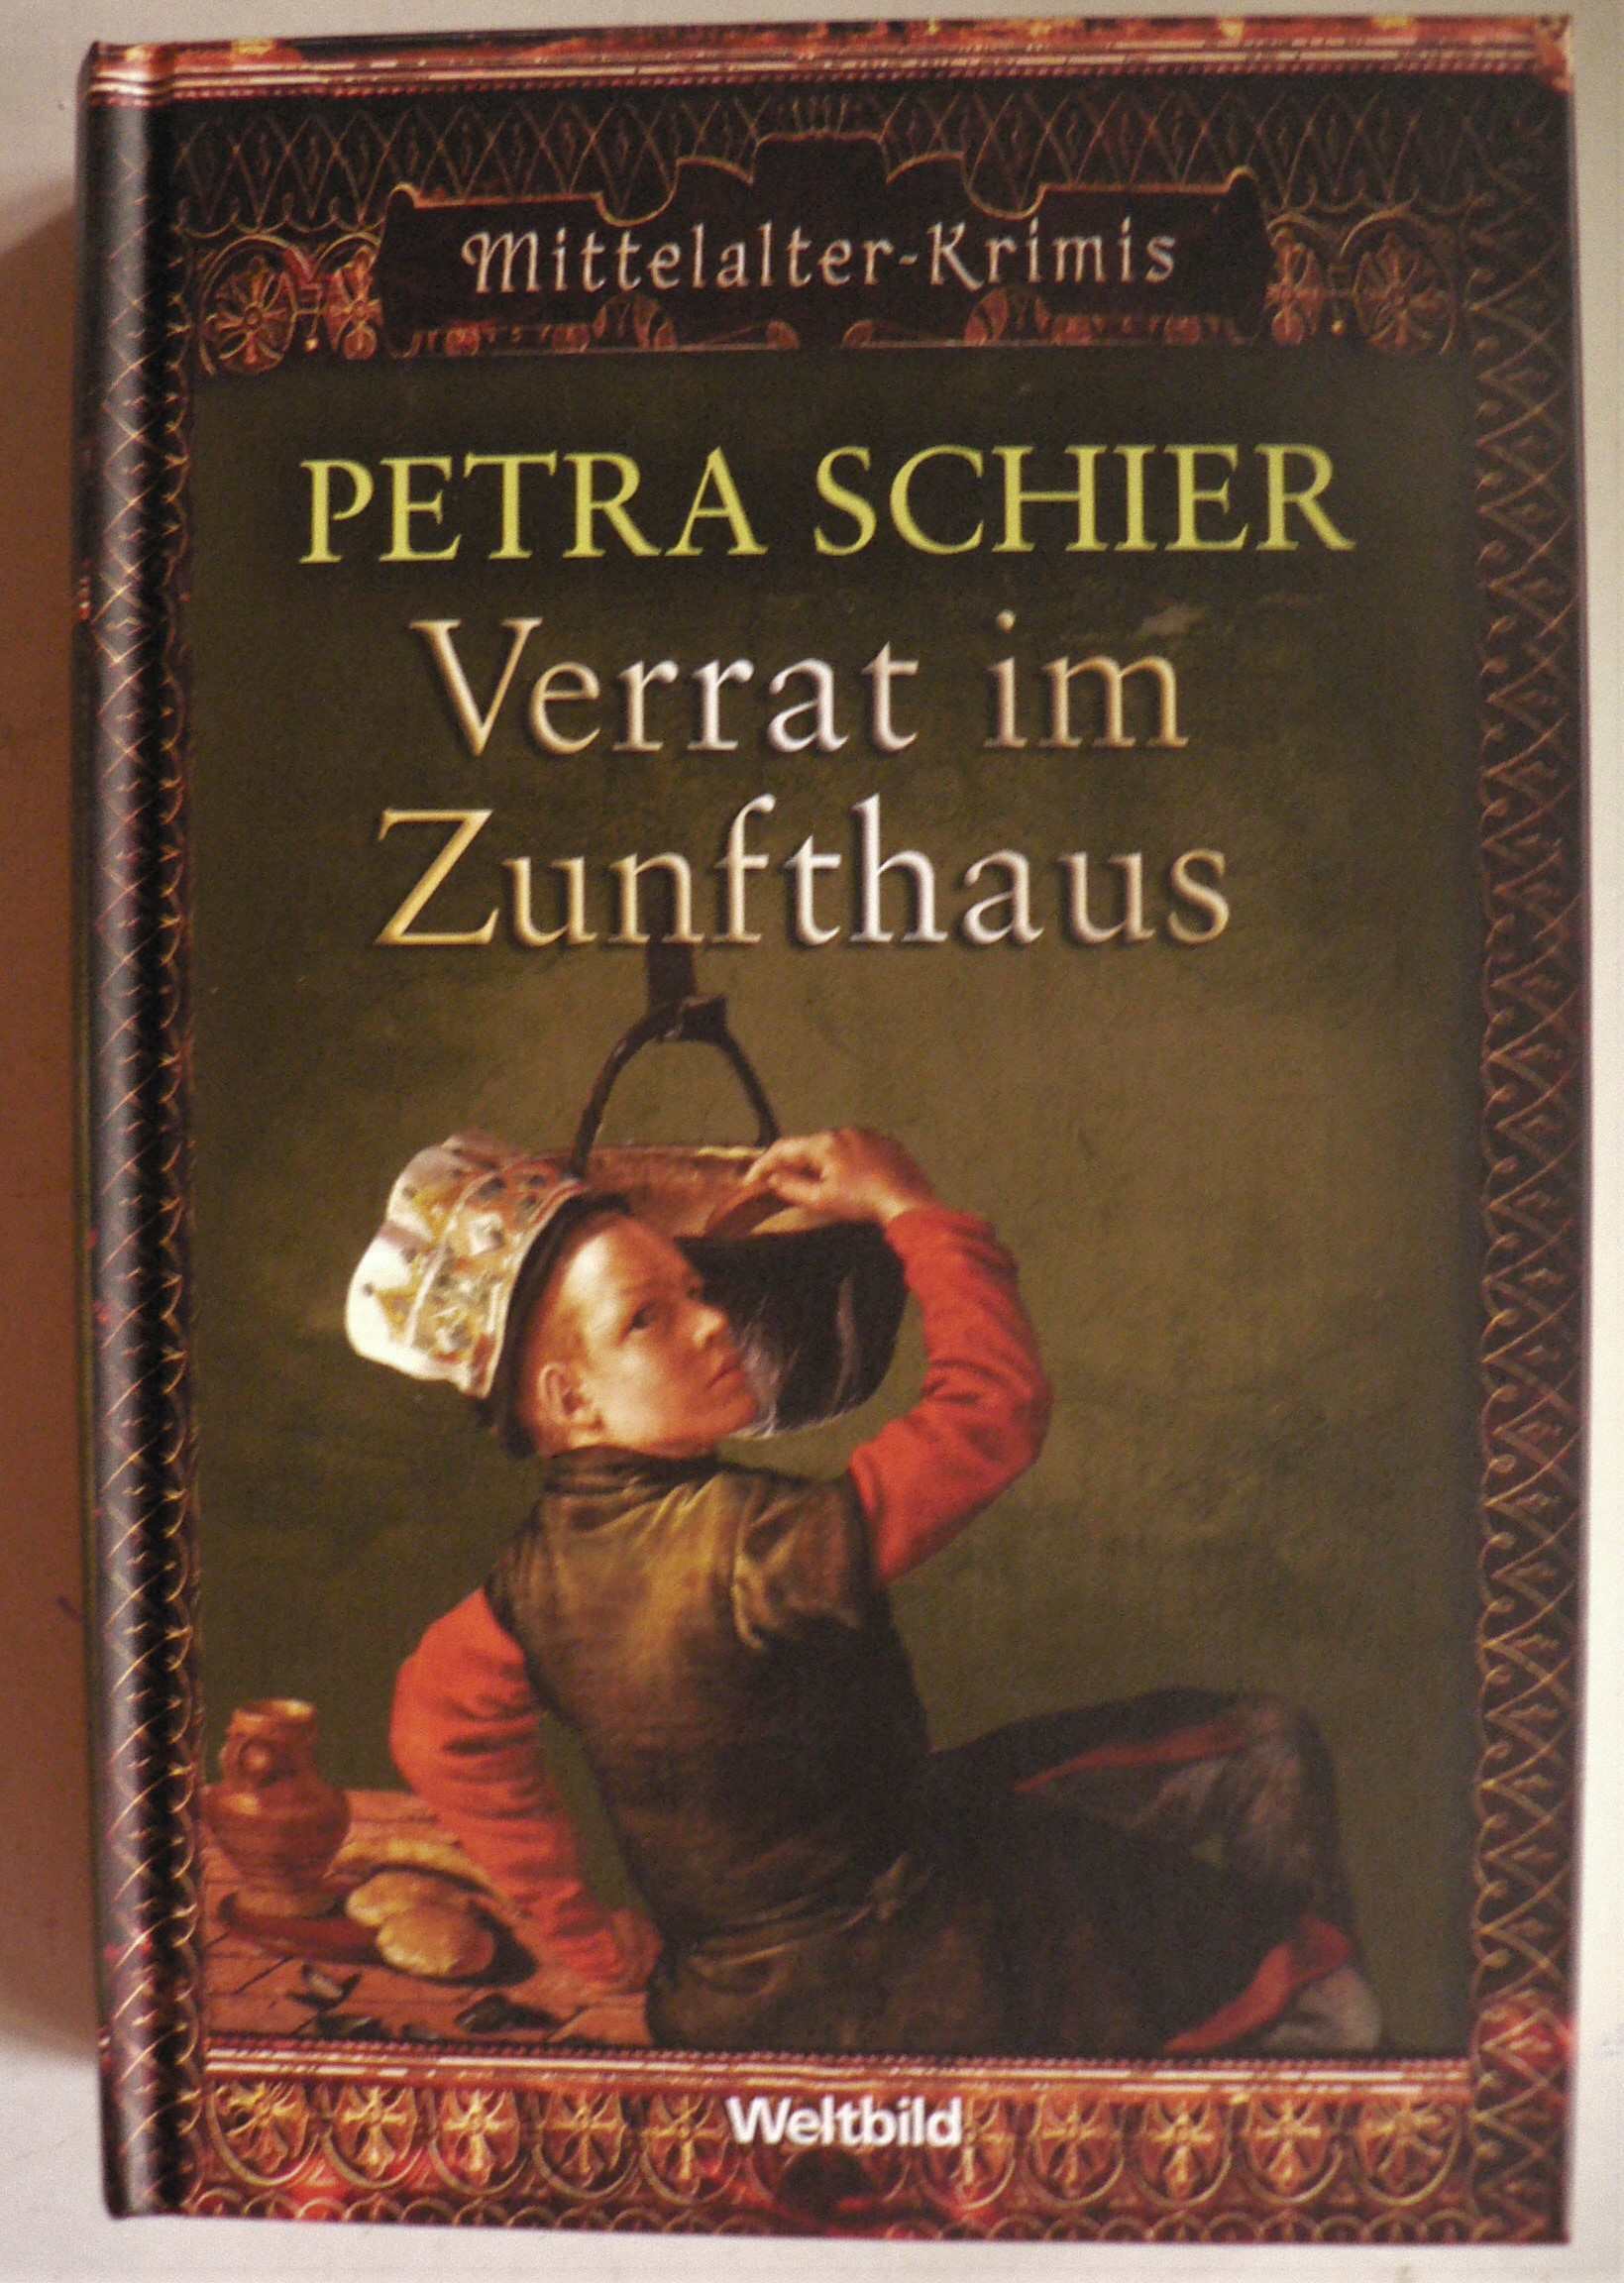 Petra Schier  Verrat im Zunfthaus (Mittelalter-Krimis) 